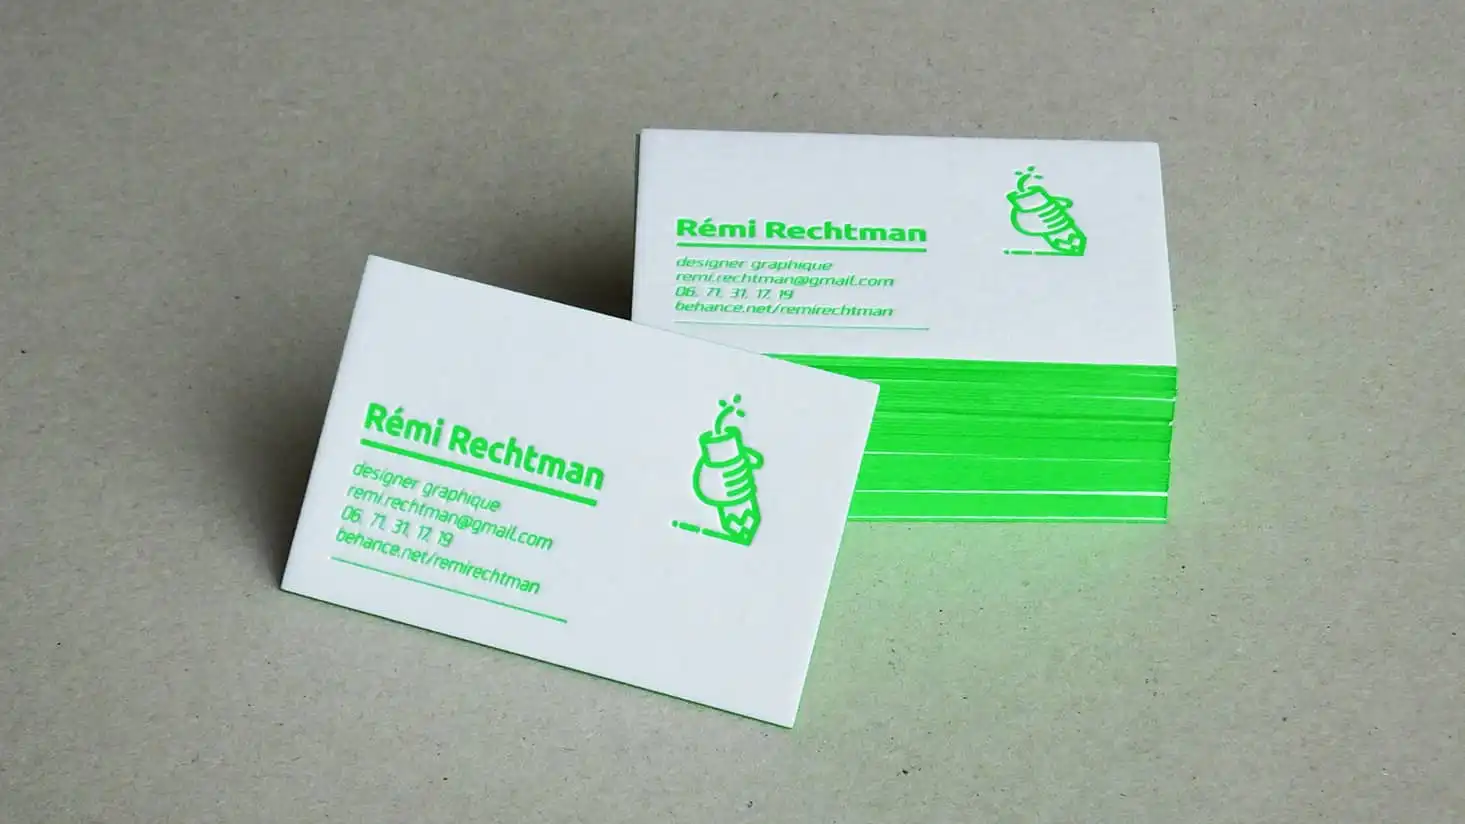 Rémi Rechtman's former business cards